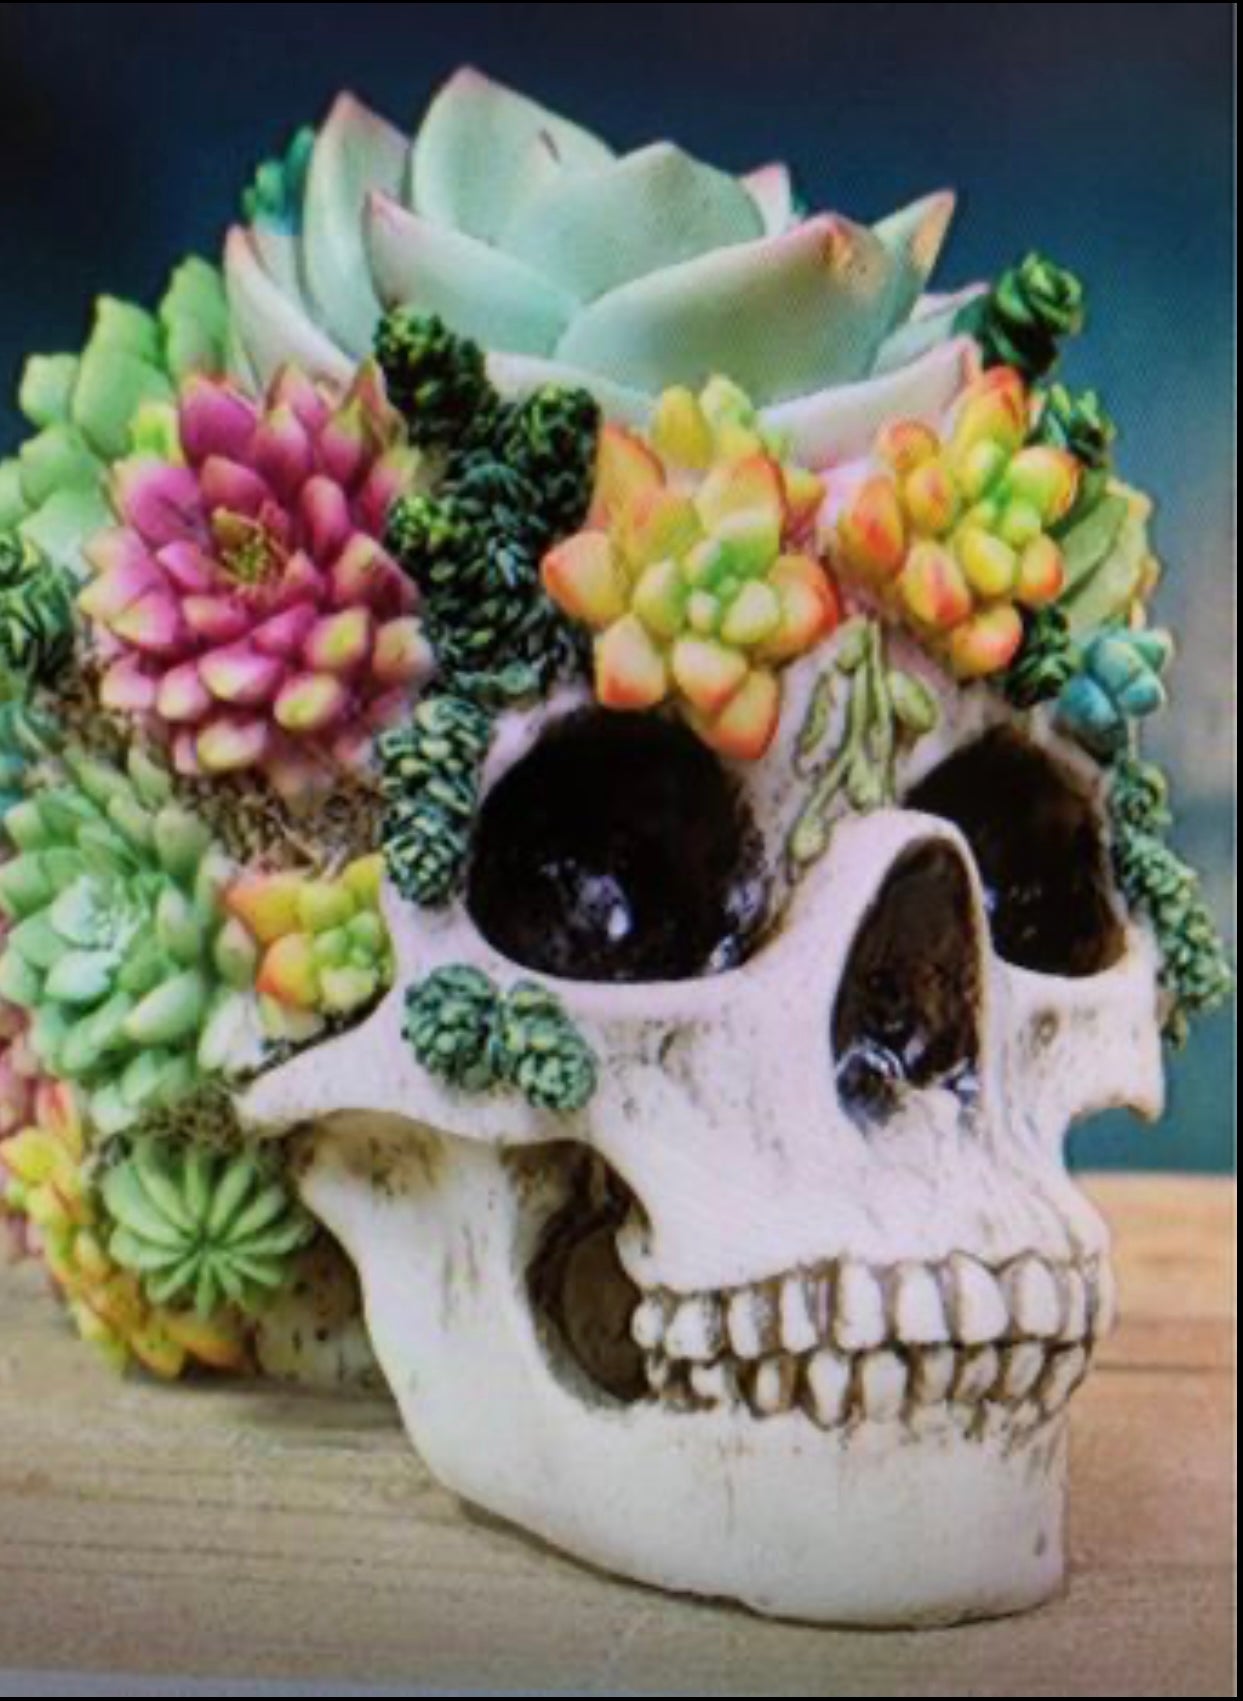 Flowered Skull